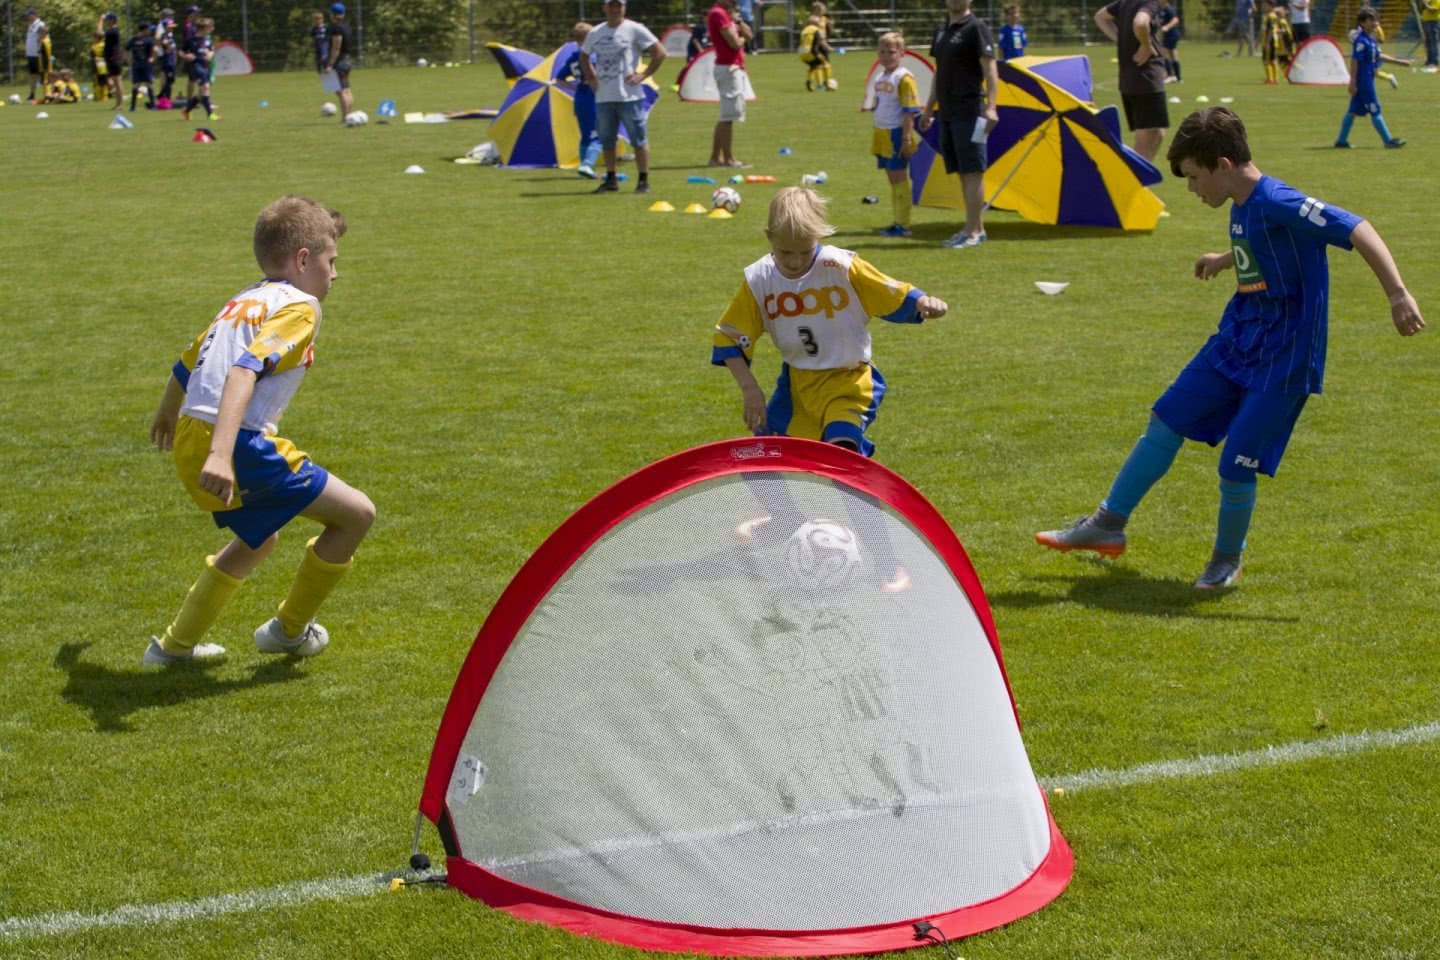 Des jeunes jouents au football sur un terrain.